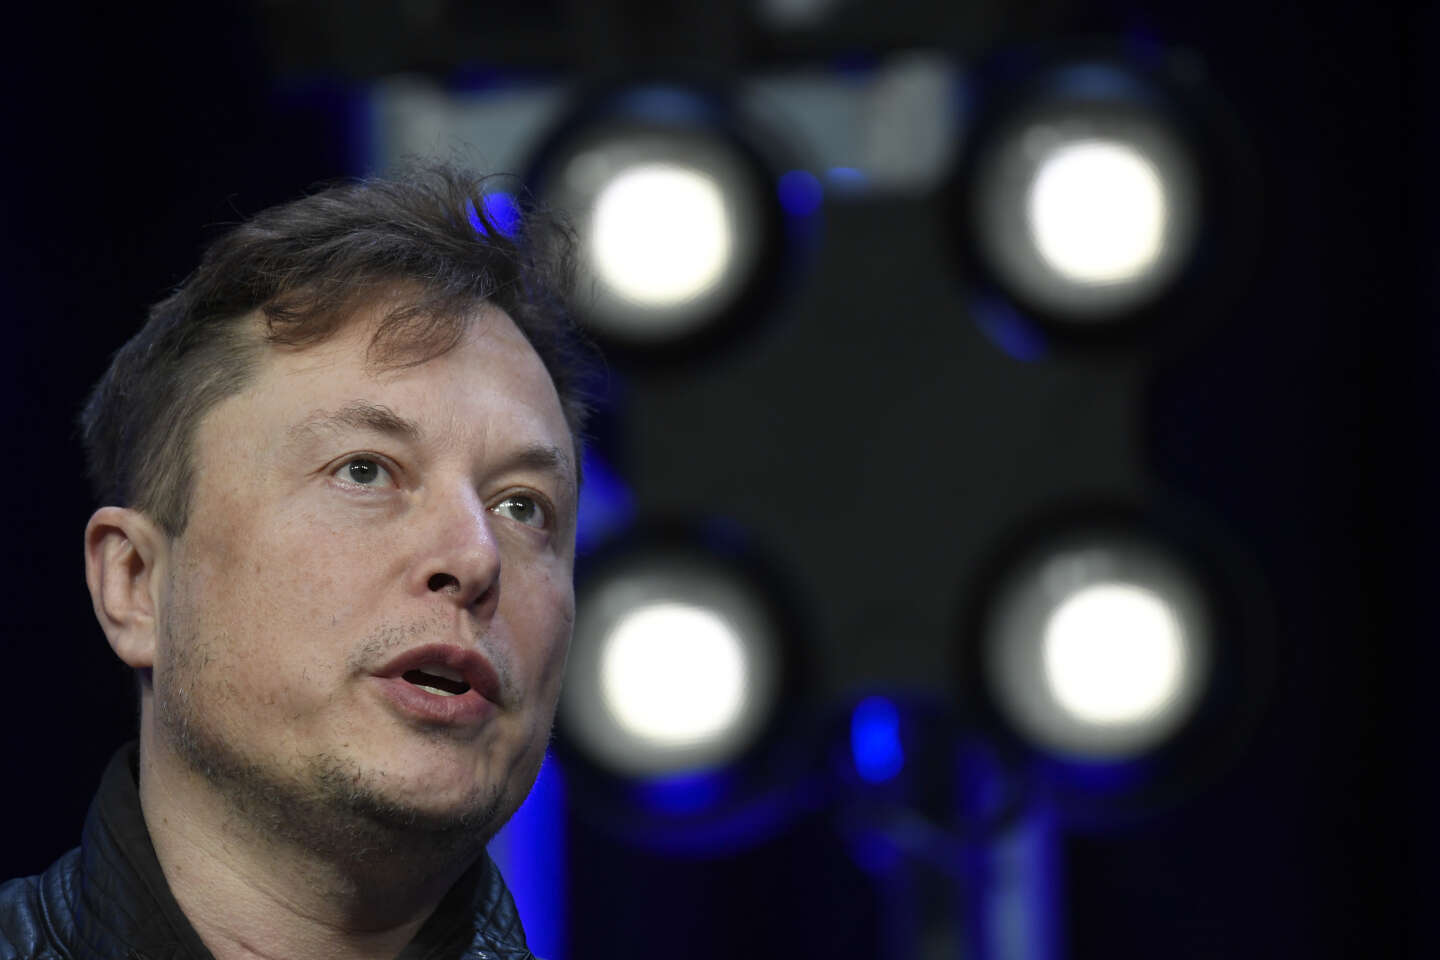 Elon Musk relance son offre de rachat de Twitter, au prix convenu en avril - Le Monde